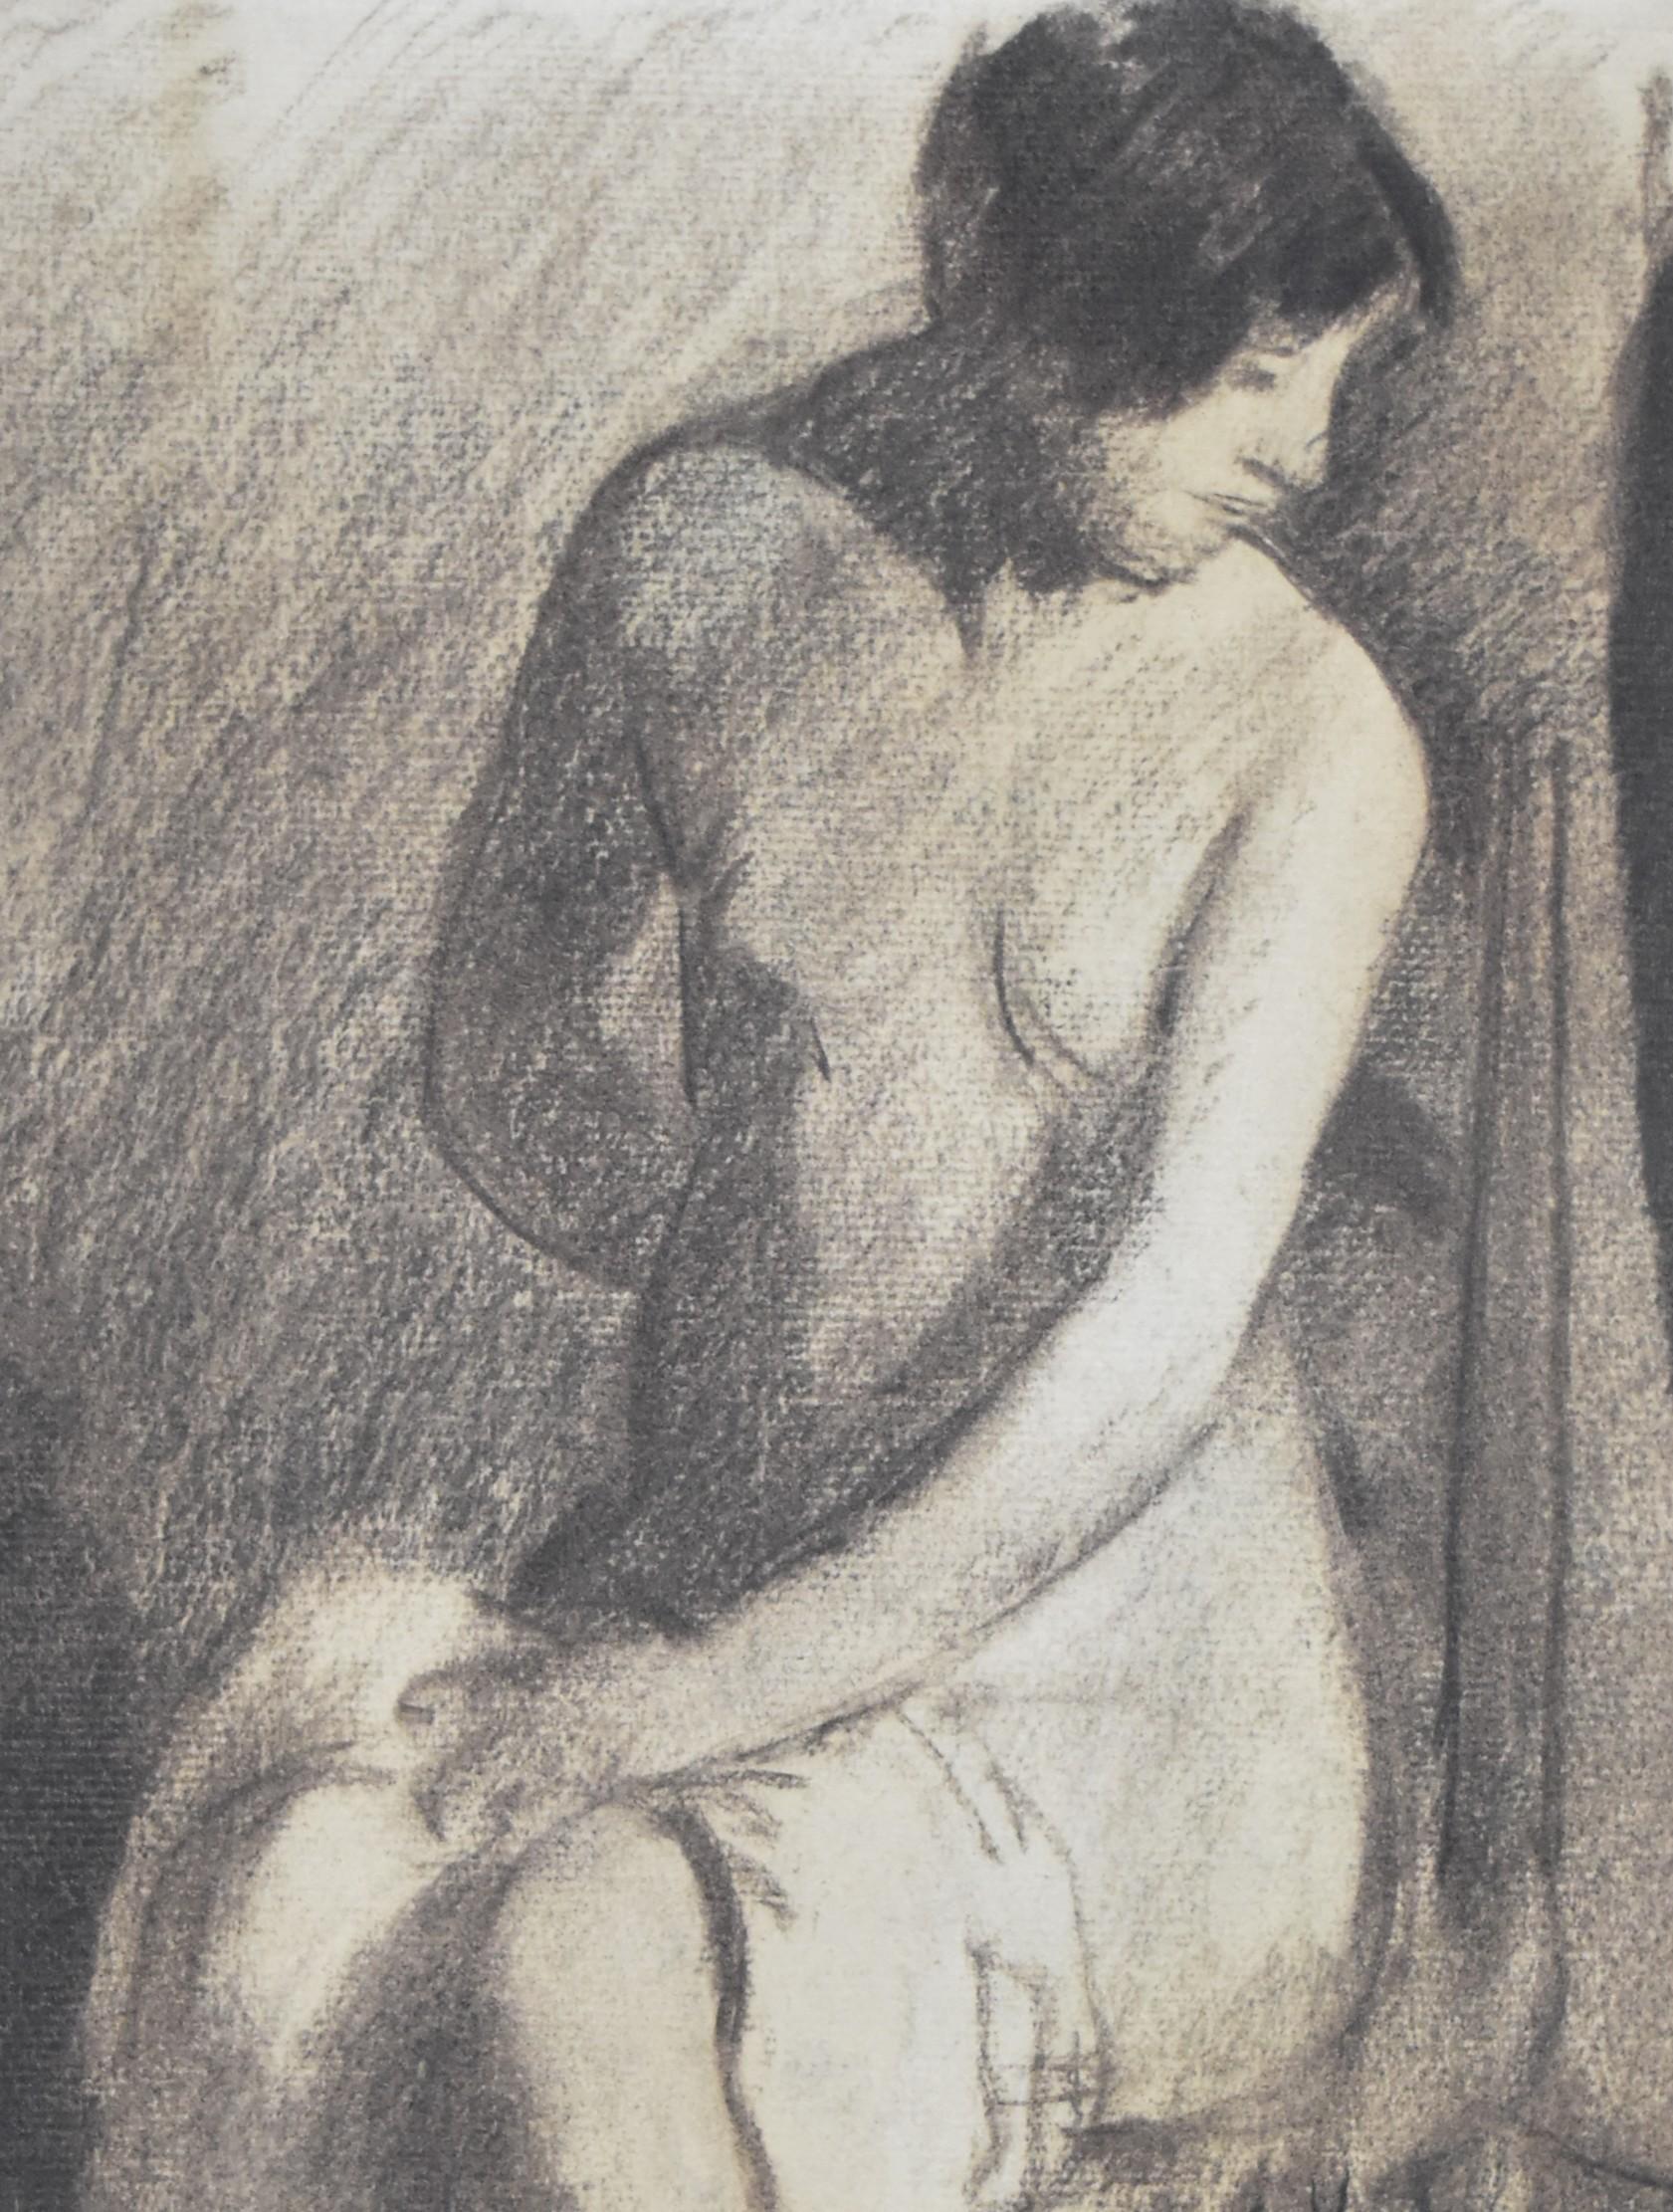 HENRY Ottmann (1877-1927)  
Nackt im Studio
signiert unten rechts
Zeichenkohle auf Papier 
37.5 x 31.5 cm
In gutem Zustand
In einem modernen Rahmen: 53 x 46,5 cm

Veröffentlicht unter Nr. 414 des Werkverzeichnisses des Künstlers (S. 167),